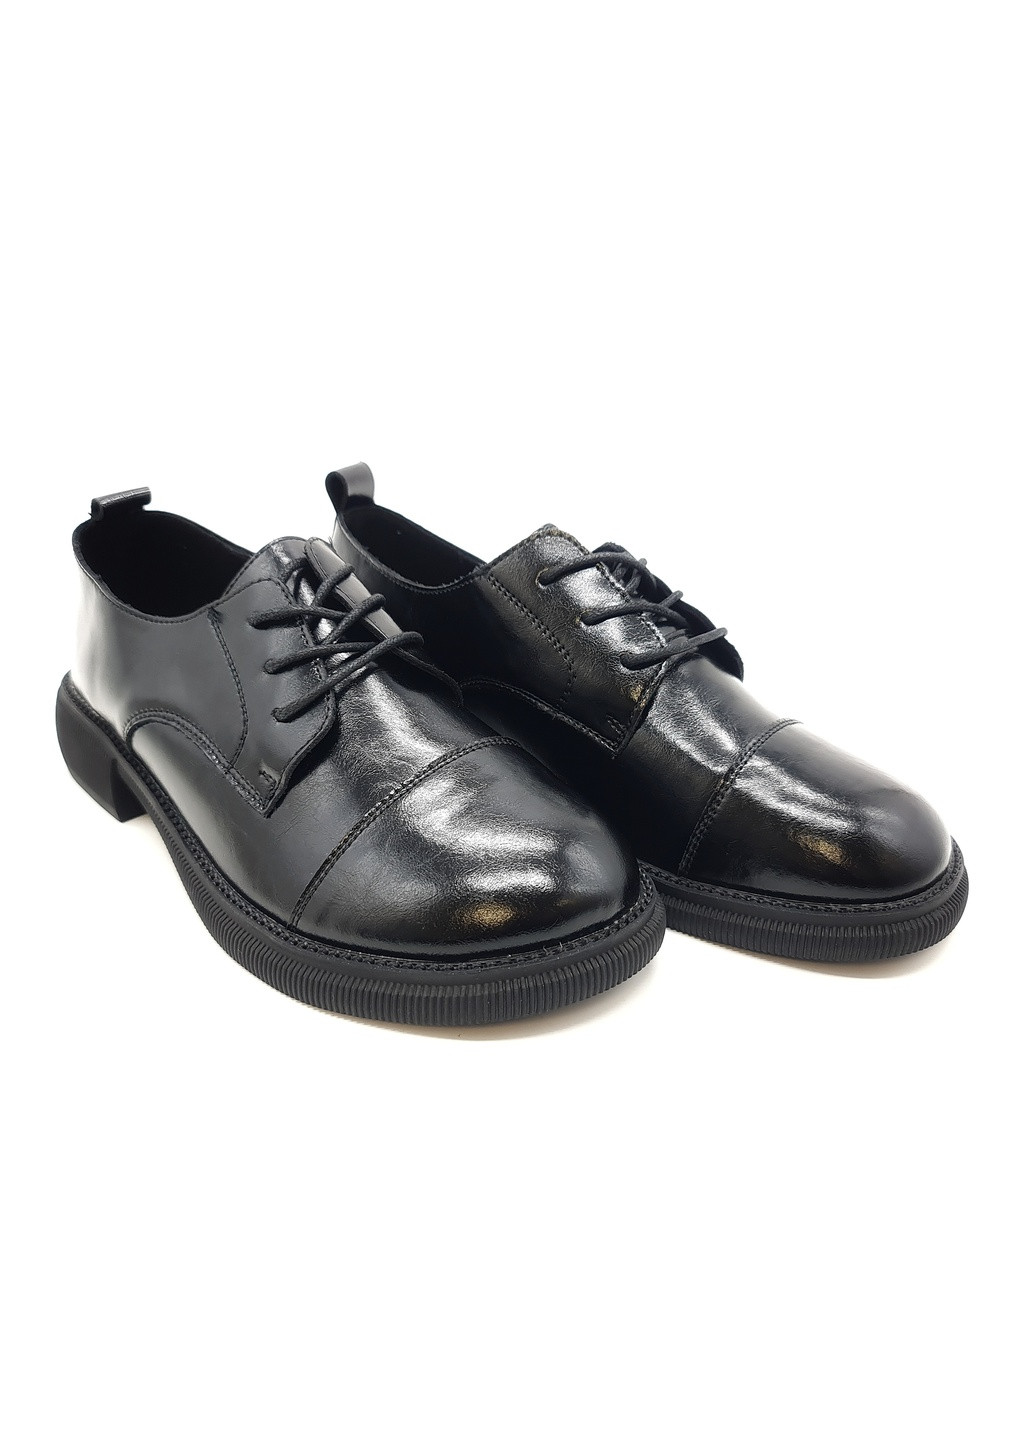 Женские туфли черные кожаные YA-16-1 23 см (р) Yalasou